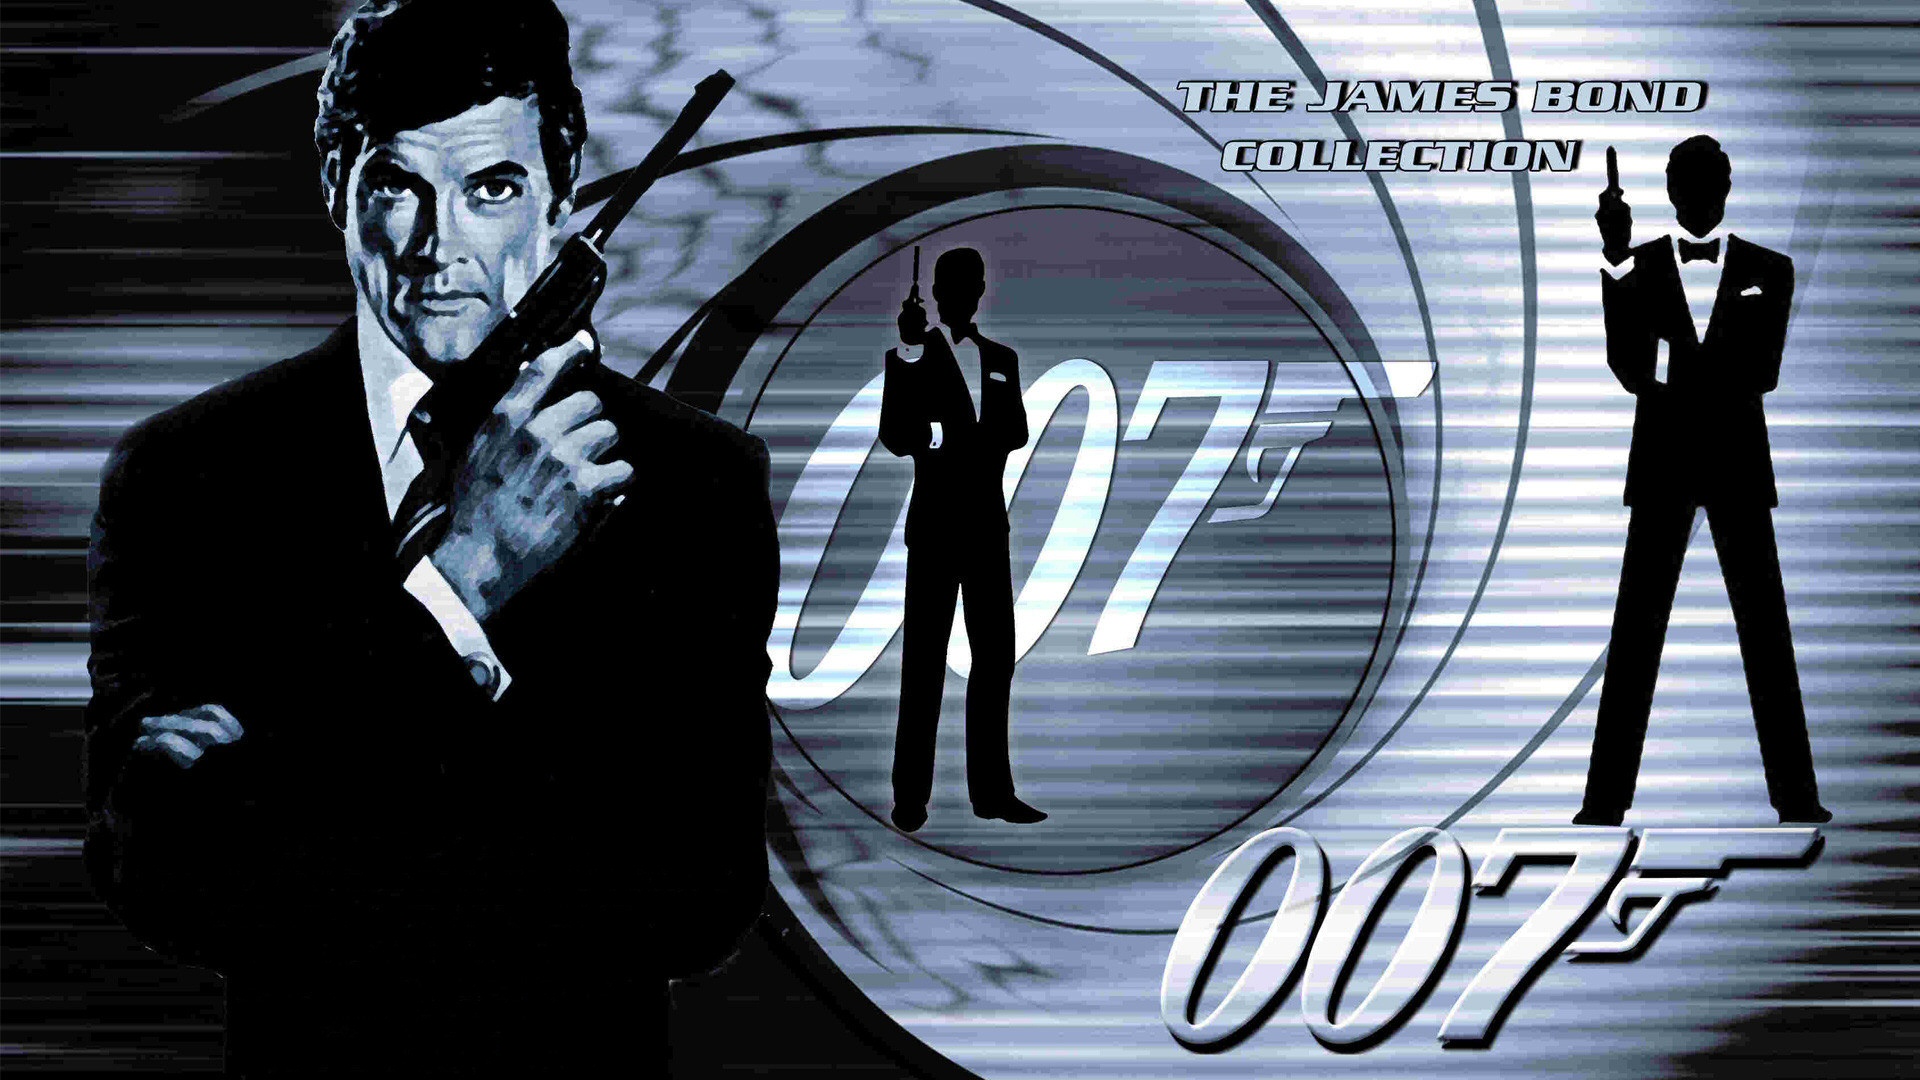 James Bond Background Image Wallpaper